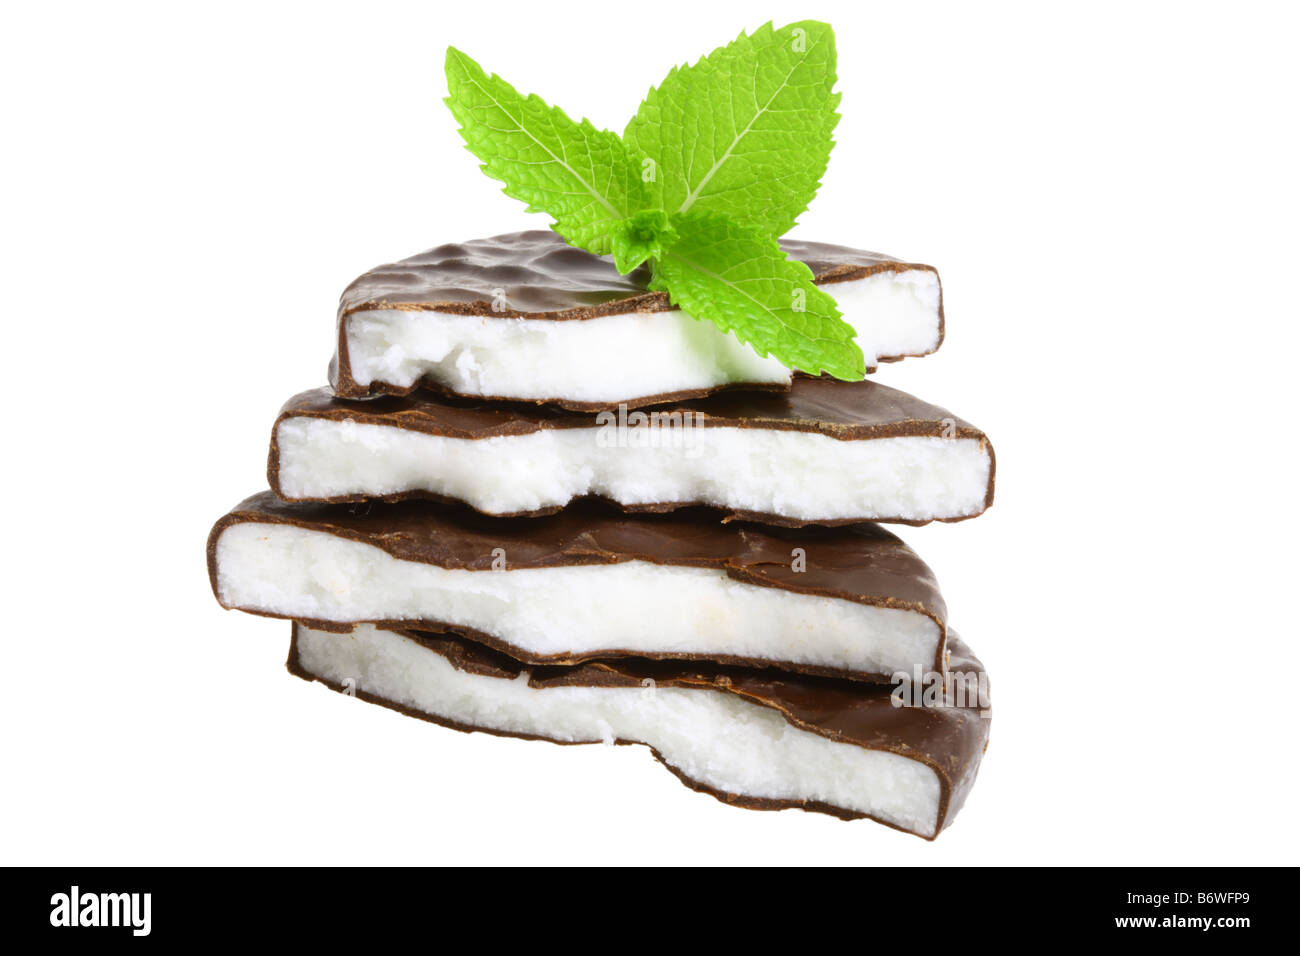 Pila de caramelos de menta y hojas de menta fresca cortada aislado sobre fondo blanco. Foto de stock